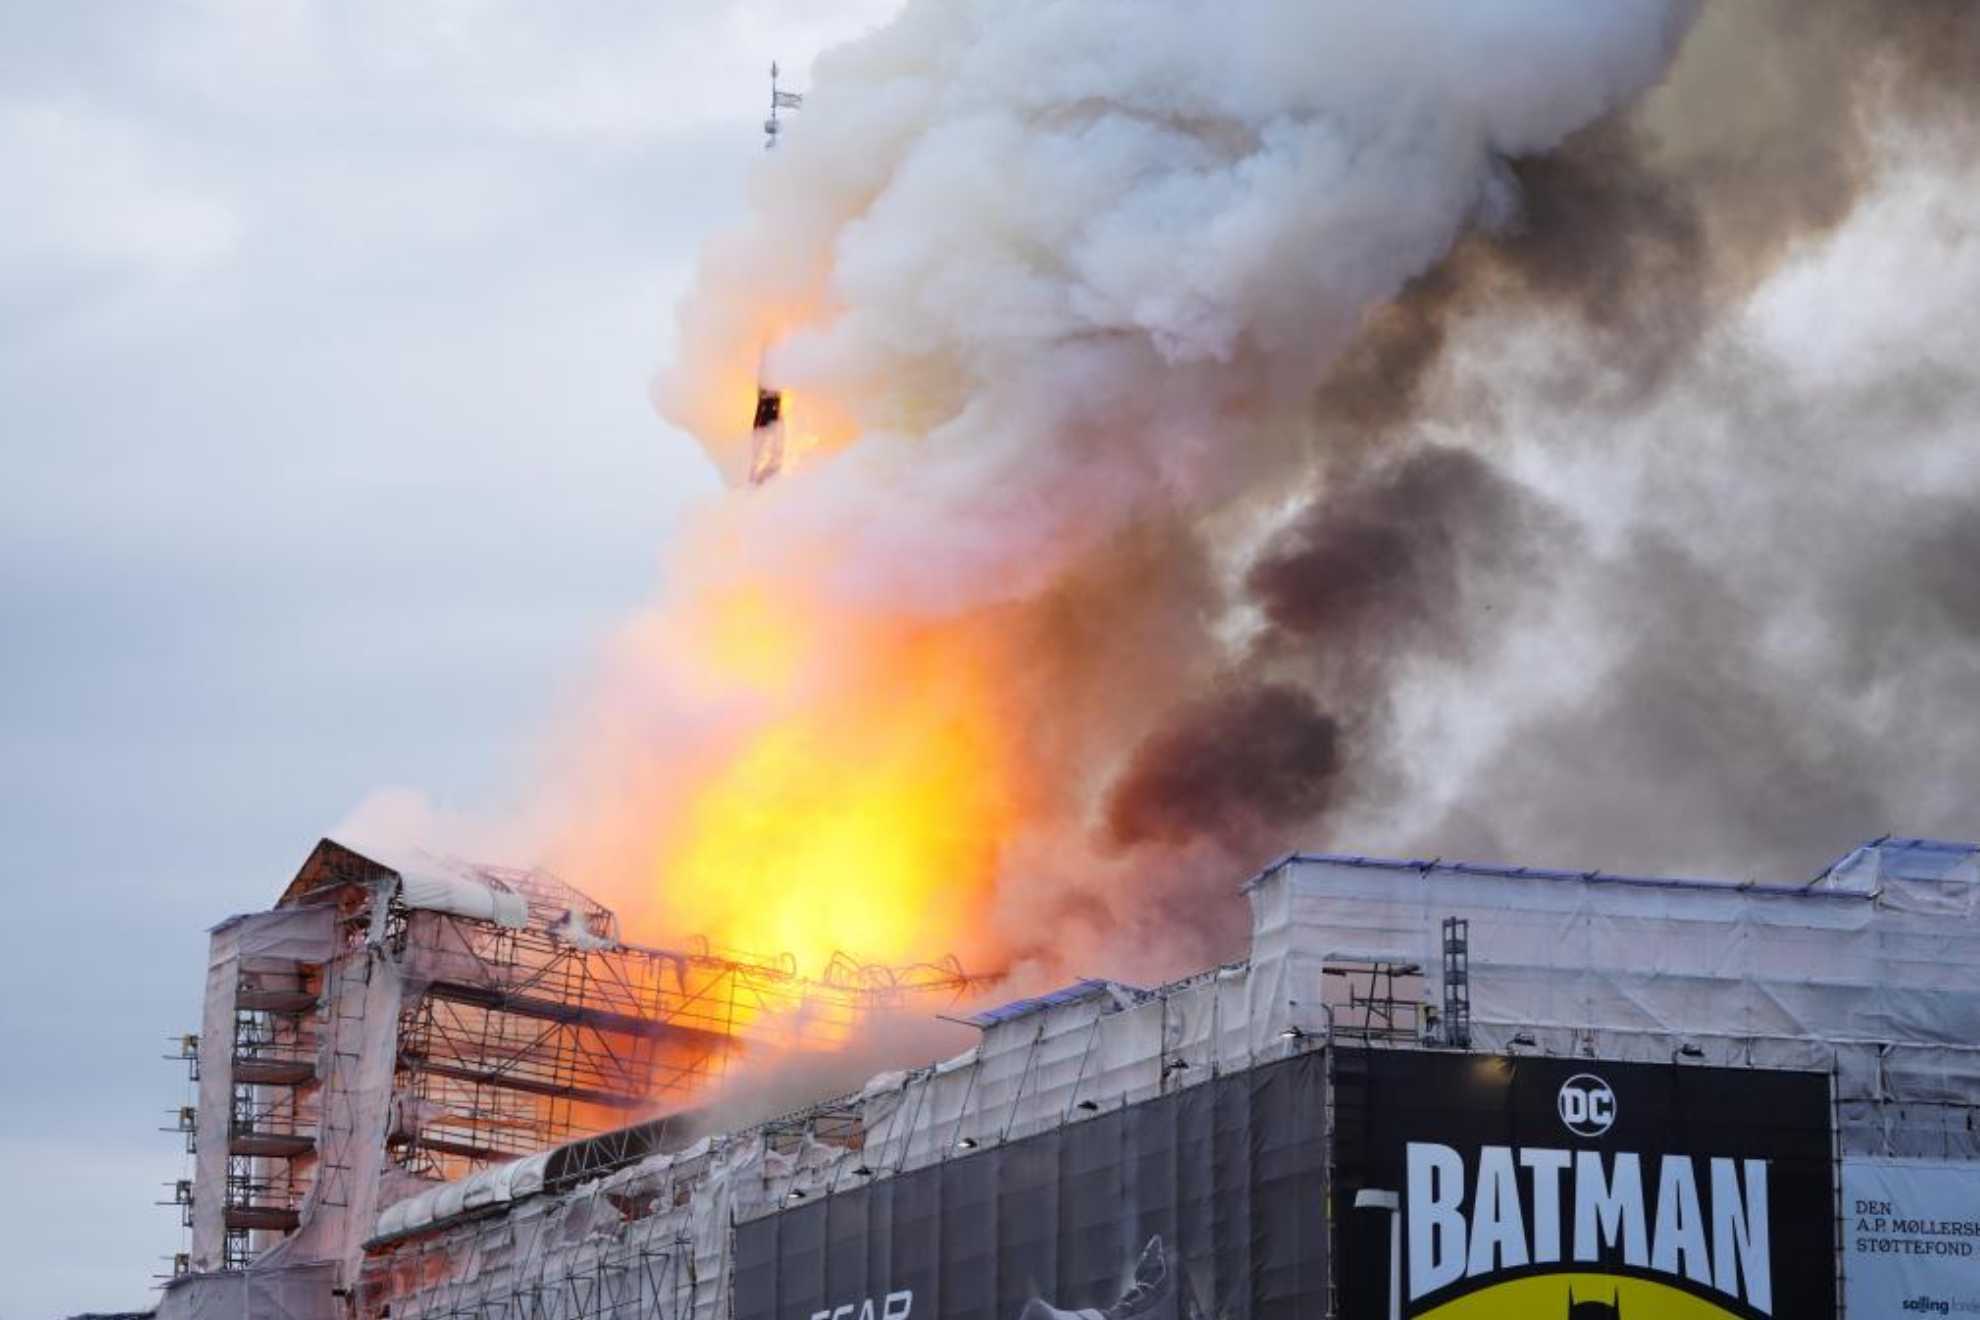 La antigua bolsa de Copenhague envuelta en llamas por un incendio de origen desconocido